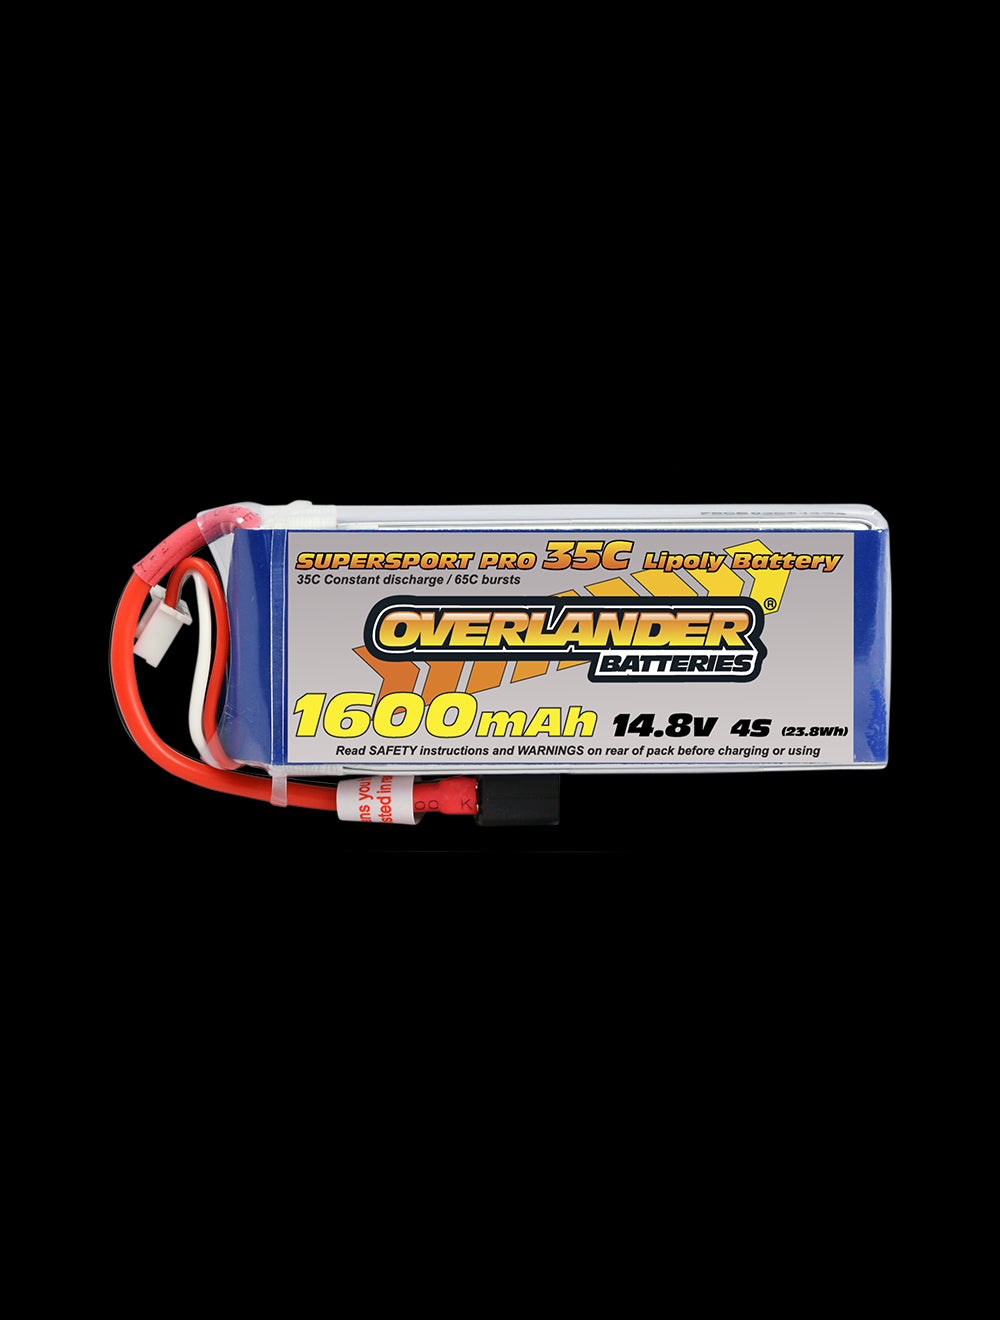 Overlander 1600mAh 14.8V 4S 35C Supersport Pro LiPo Battery - XT60 Connector 2972